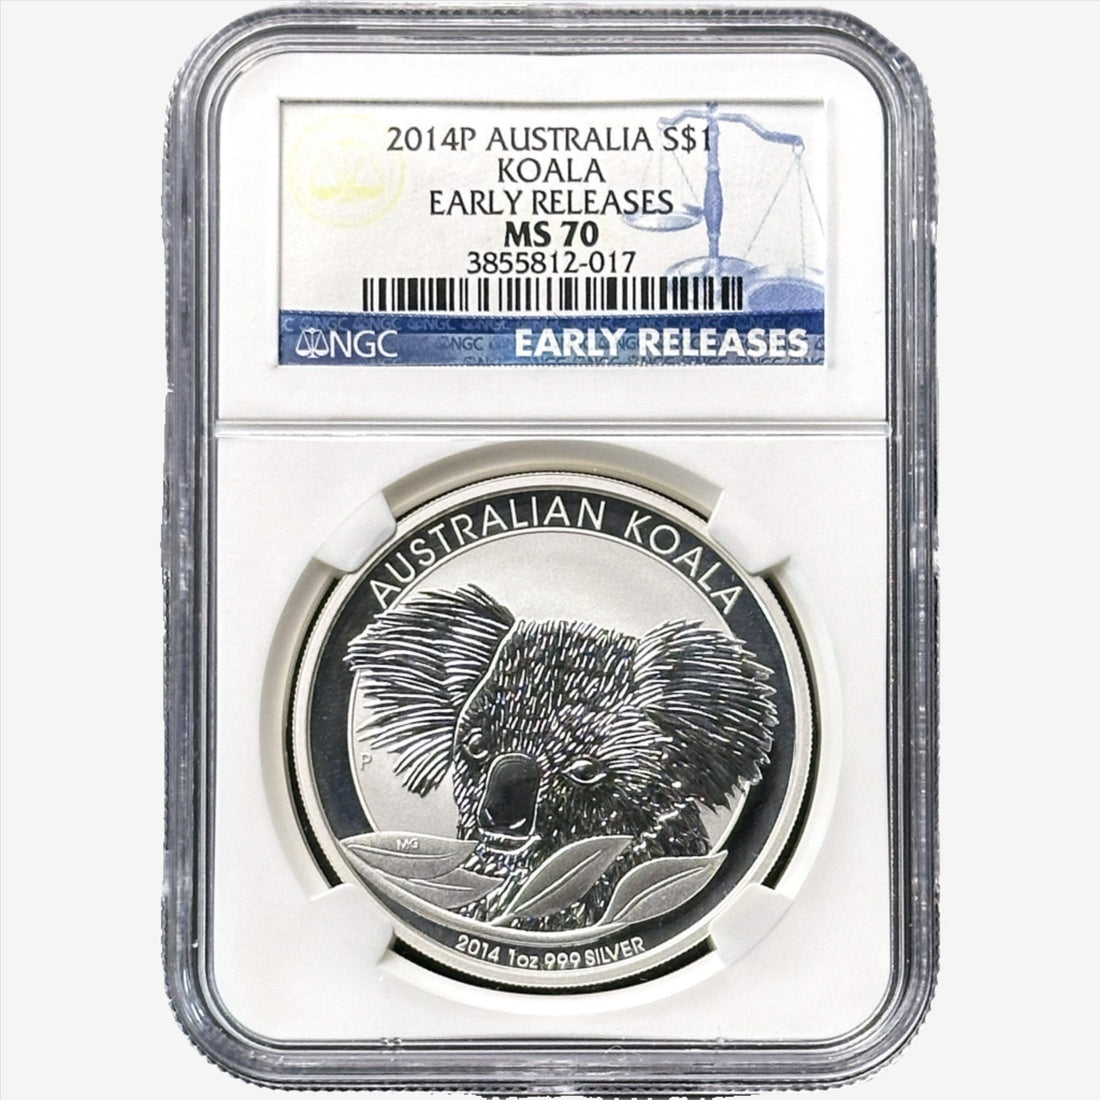 2014 P Australian 1 oz Silver Koala Early Release MS 70 - OZB